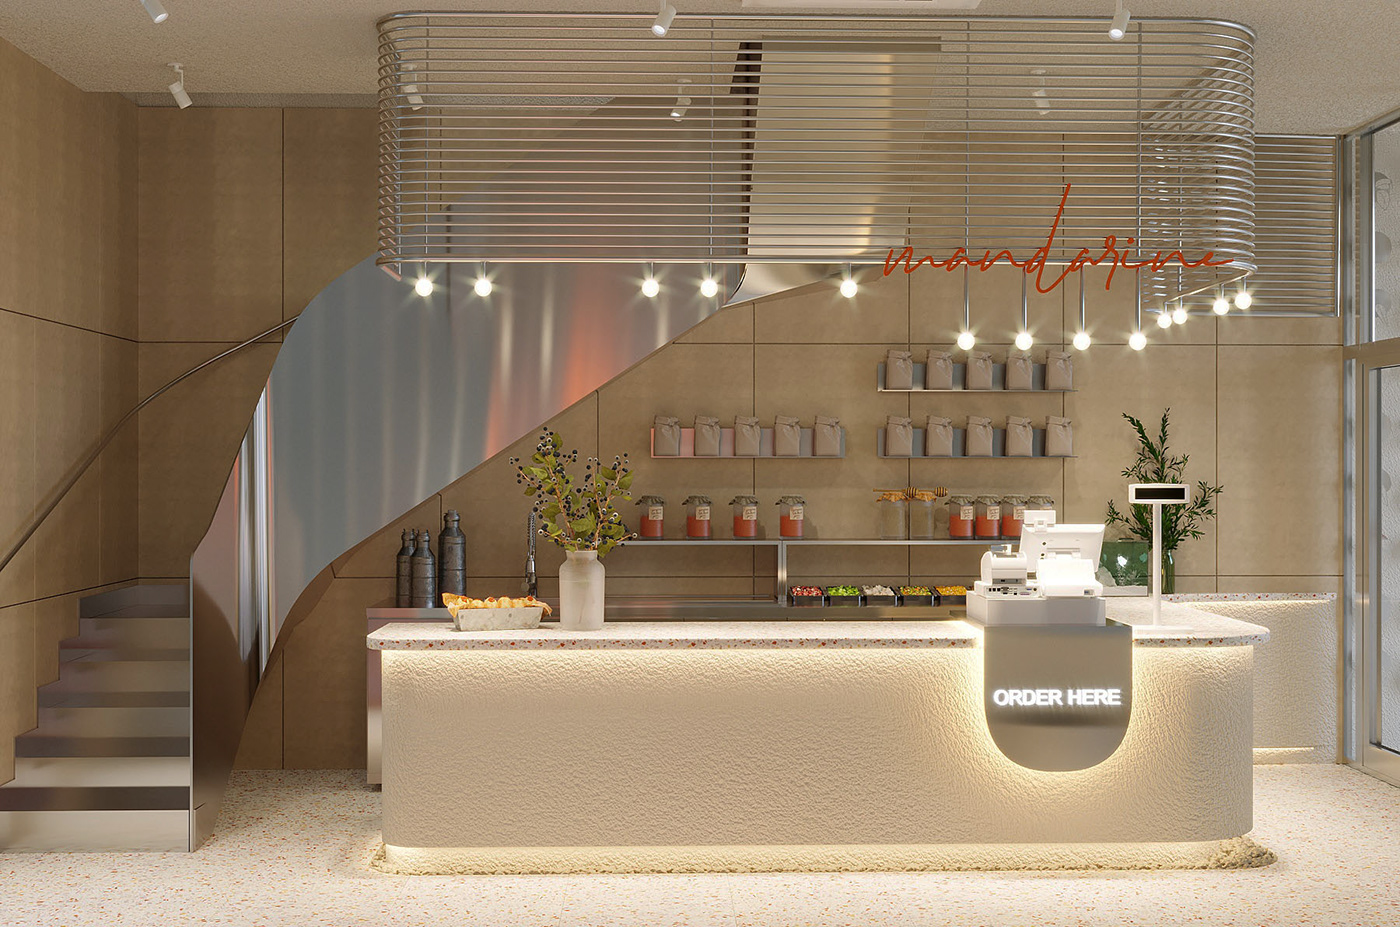 3ds max architecture Coffee coffeeconcept corona interior design  Render visualization